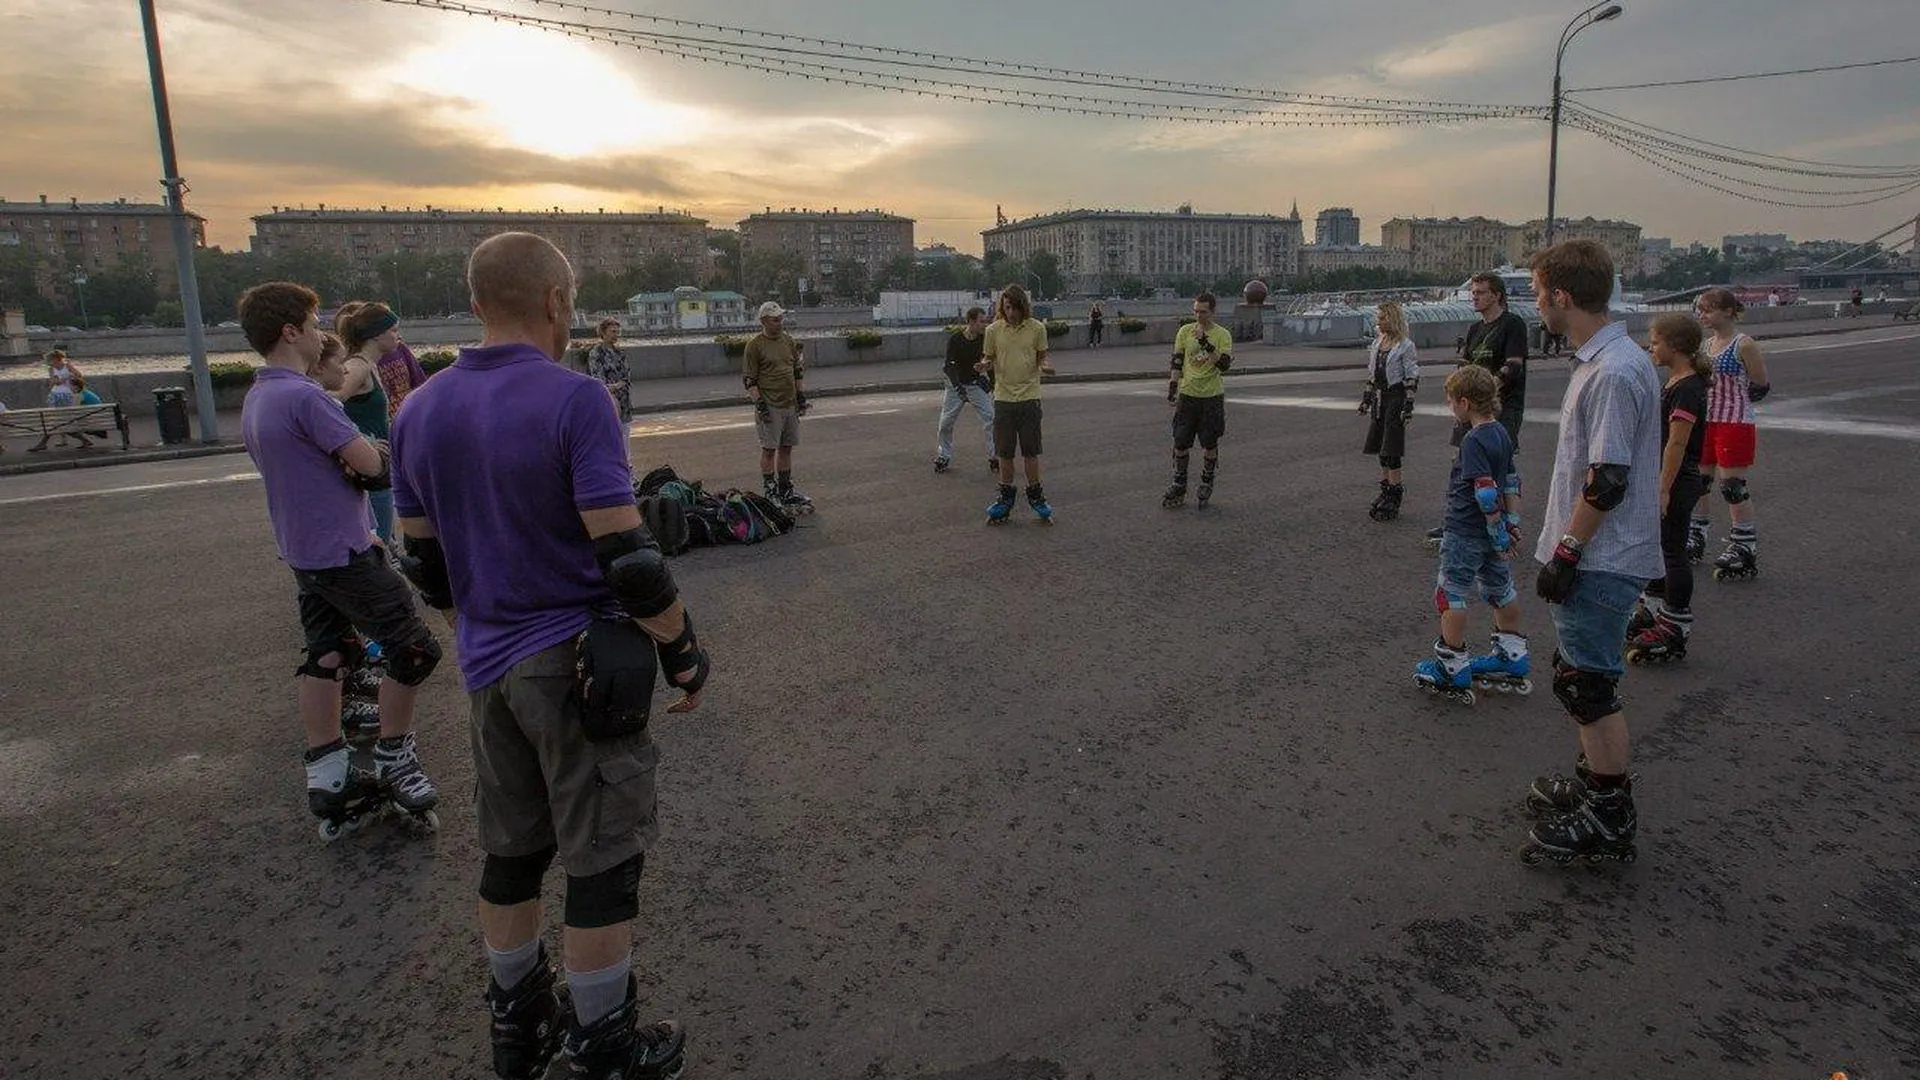 Занятия по роллерспорту будут проходить в Москве в парке Победы с понедельника